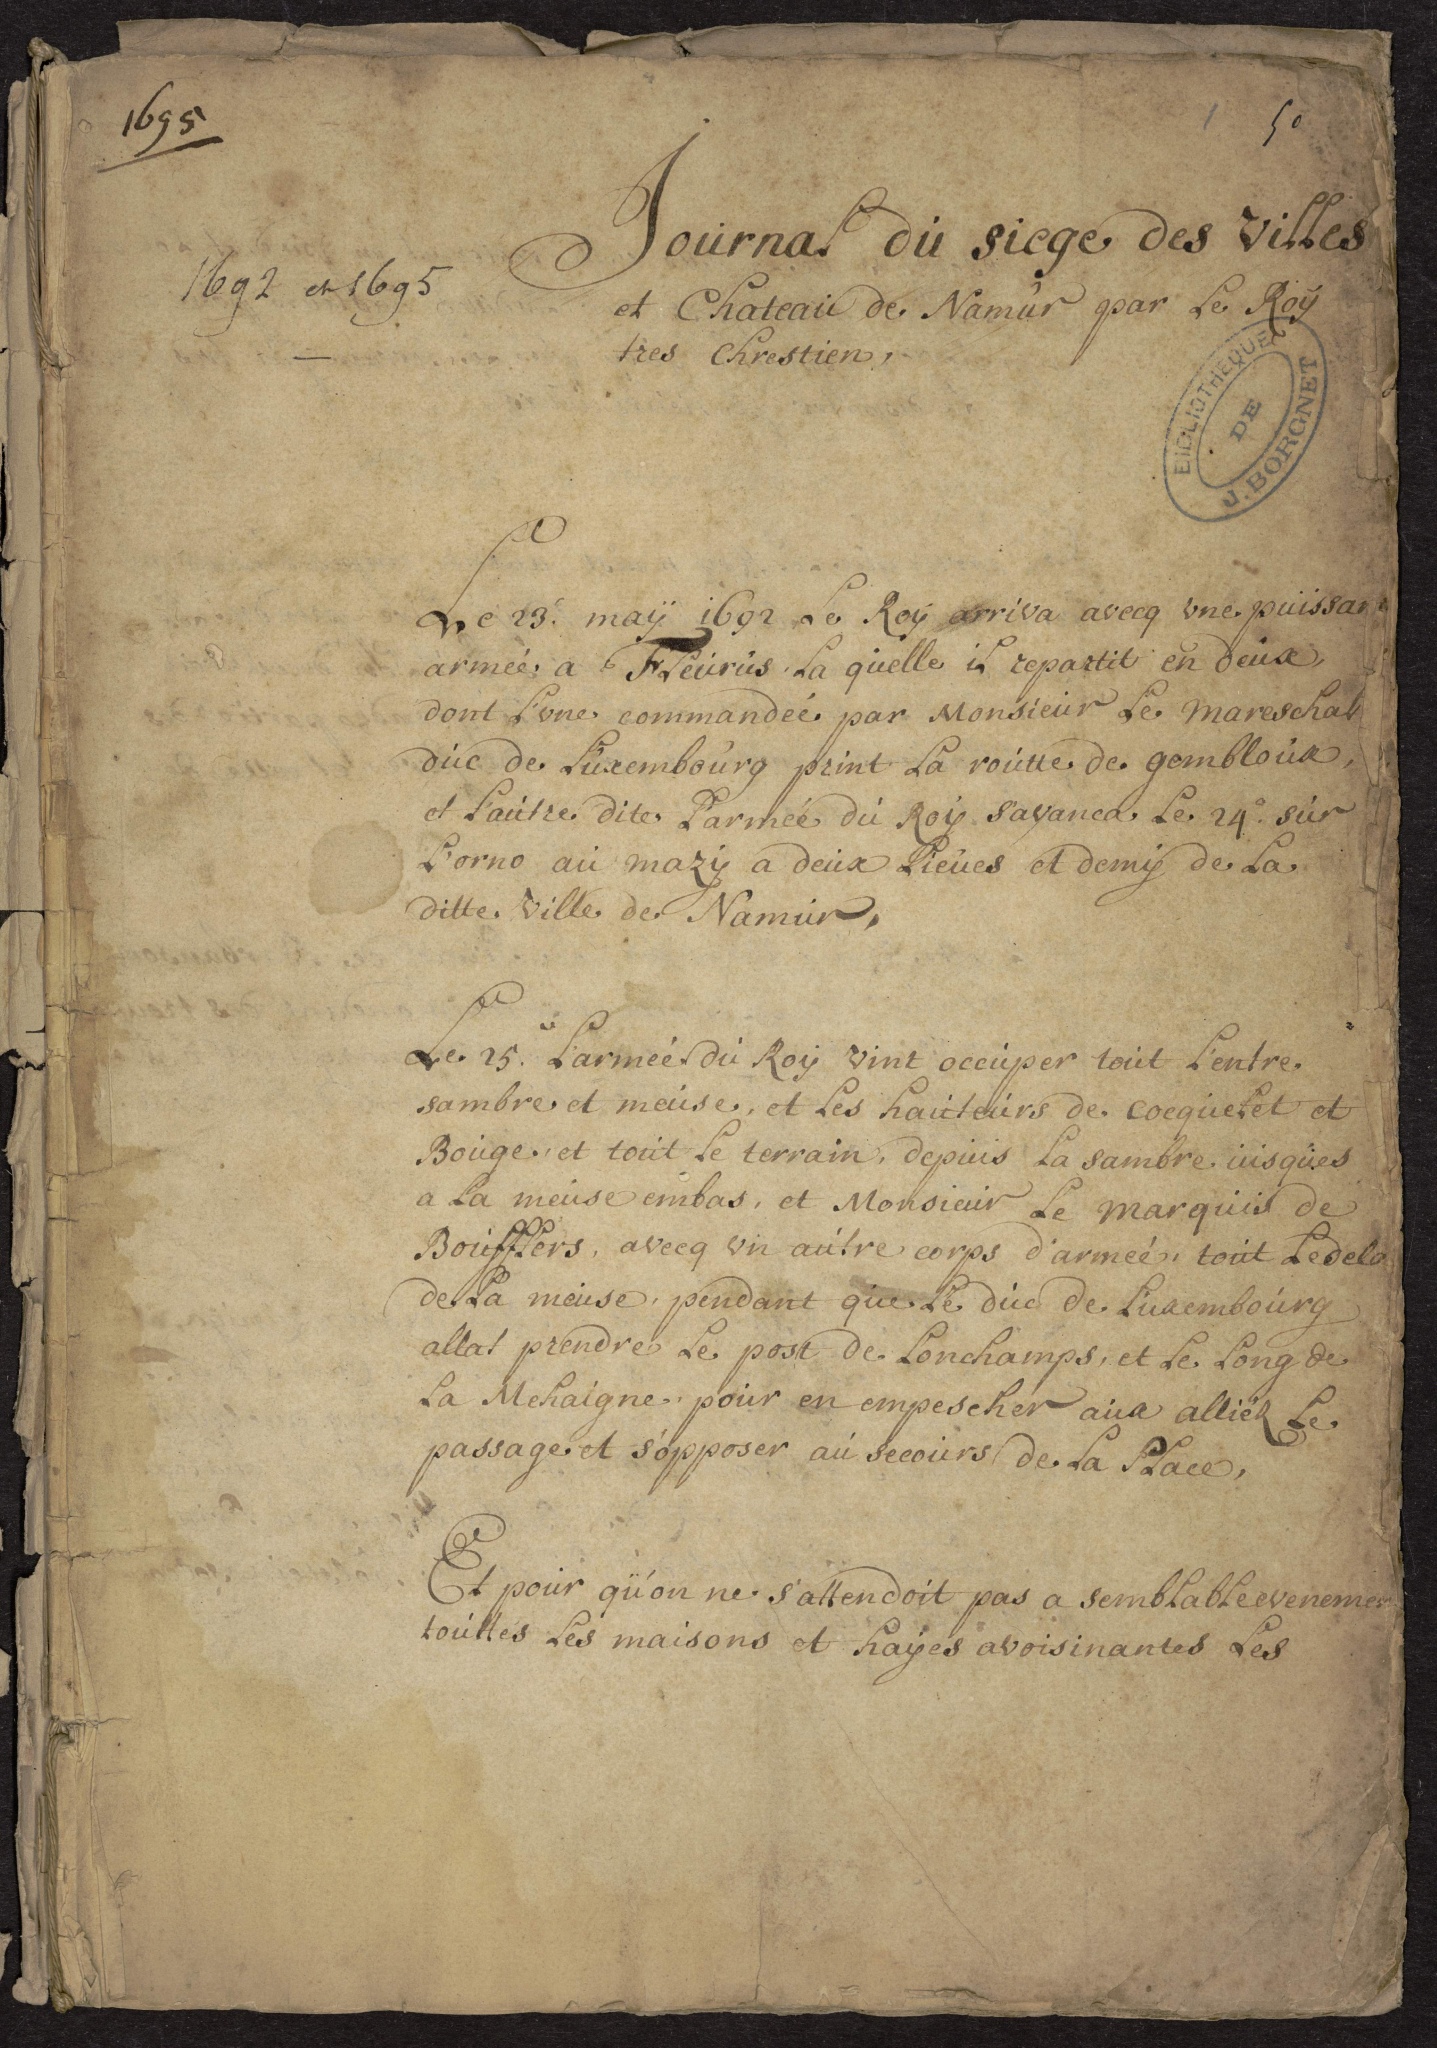 Journal des sièges de Namur, 1692 et 1695